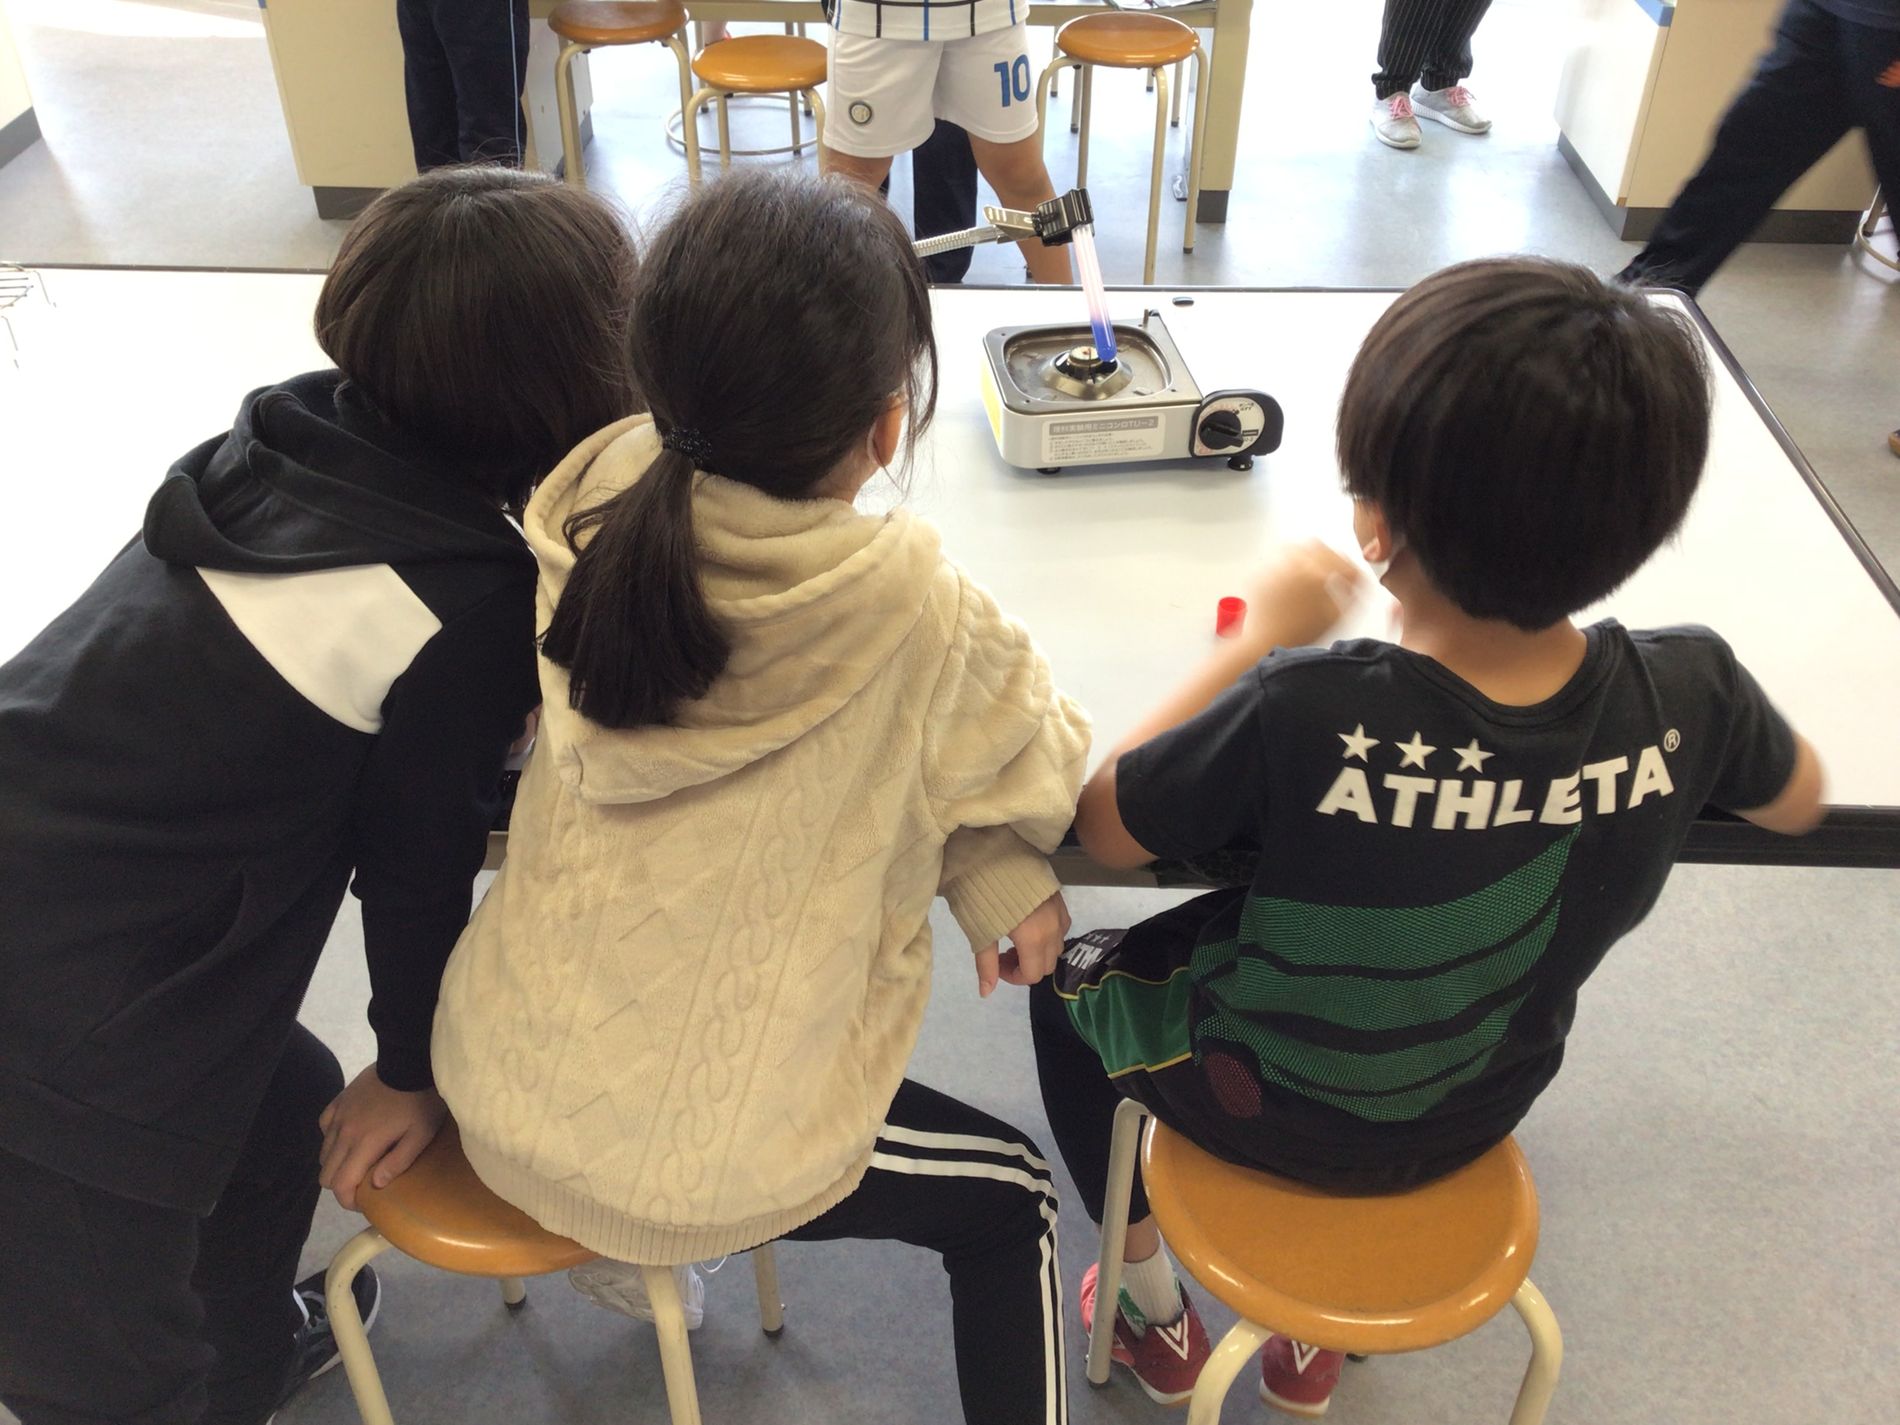 ガスコンロに試験管を置いて加熱している様子を机に座って眺めている3人の子どもたちの写真